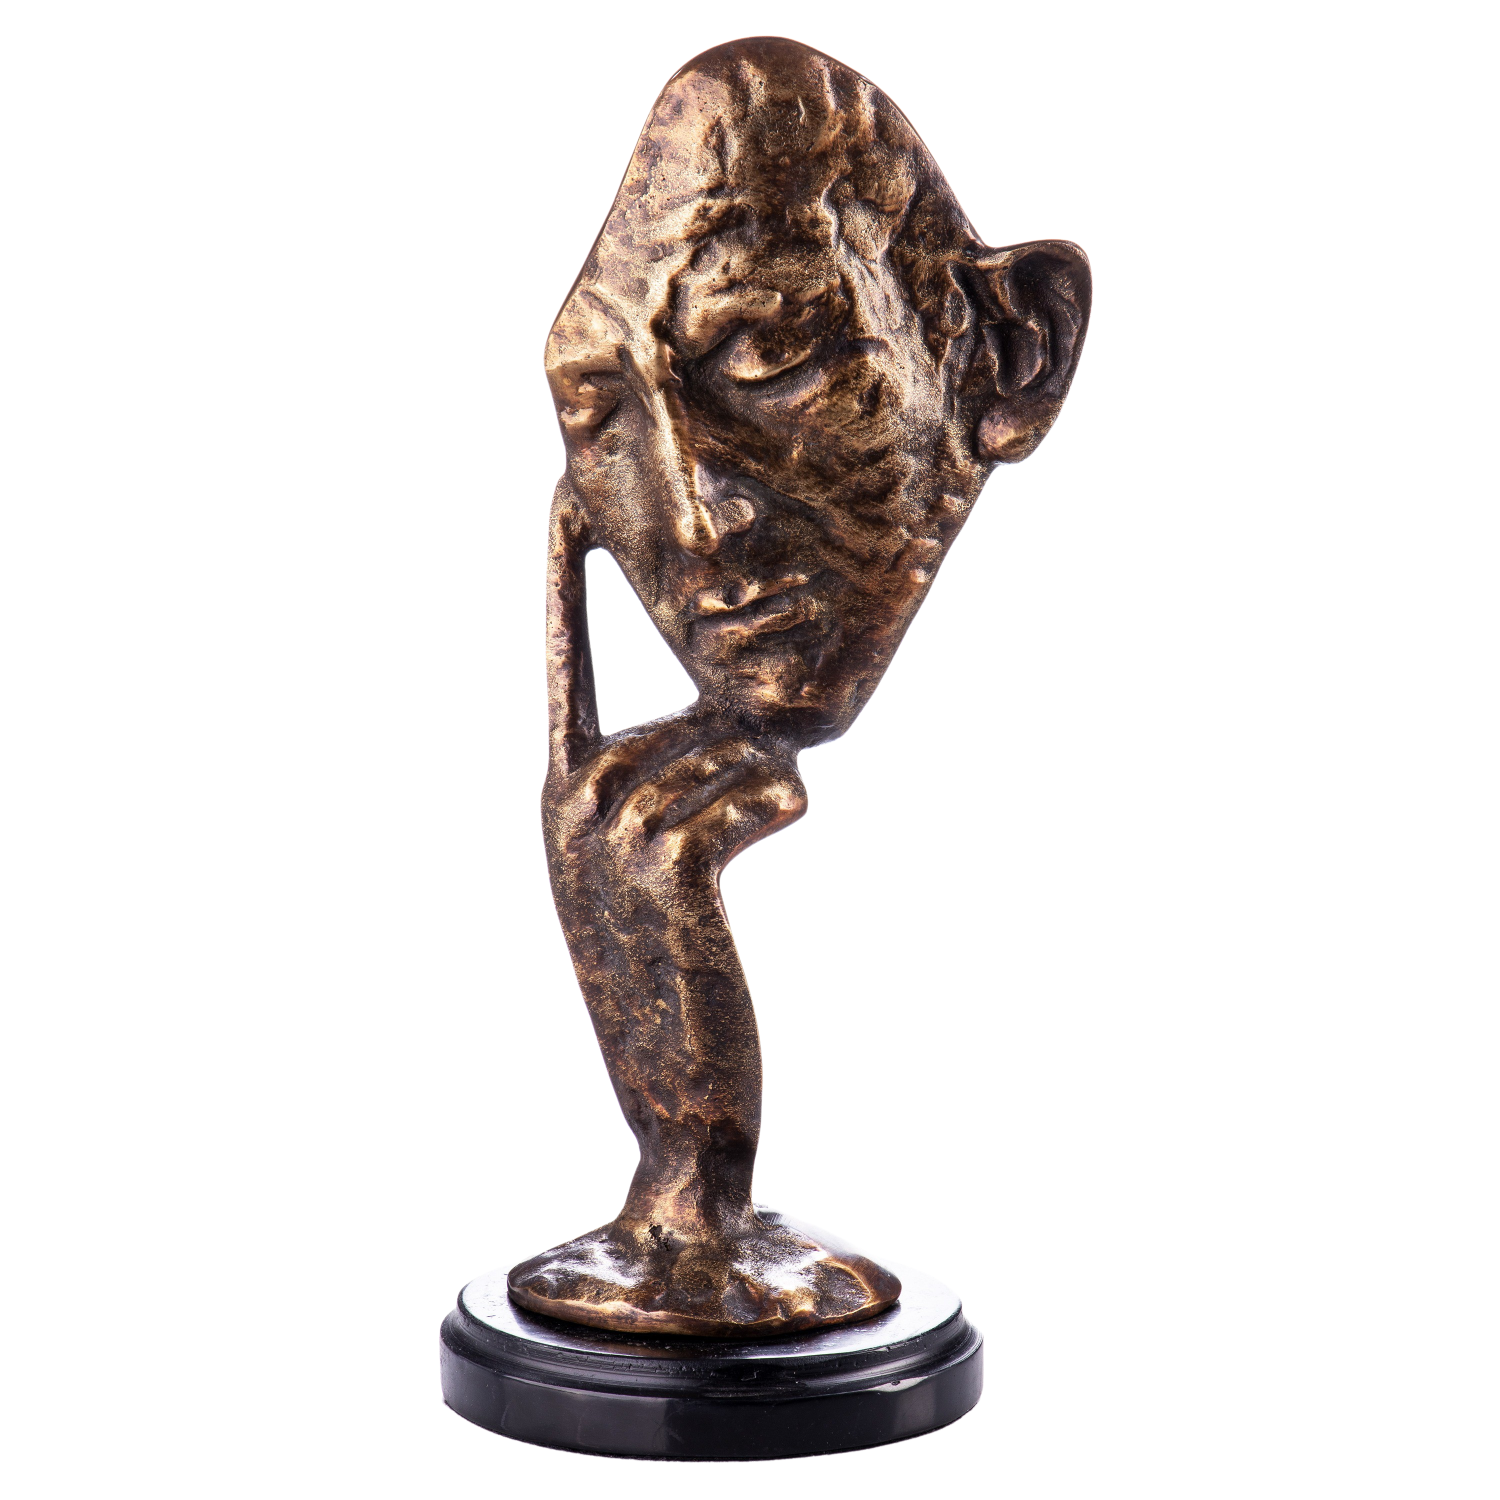 Bronzen "Thinking it Through"" koop @ Betaalbarekunst.nl. Dit stukje van brons is een echte verrijking voor je huis.